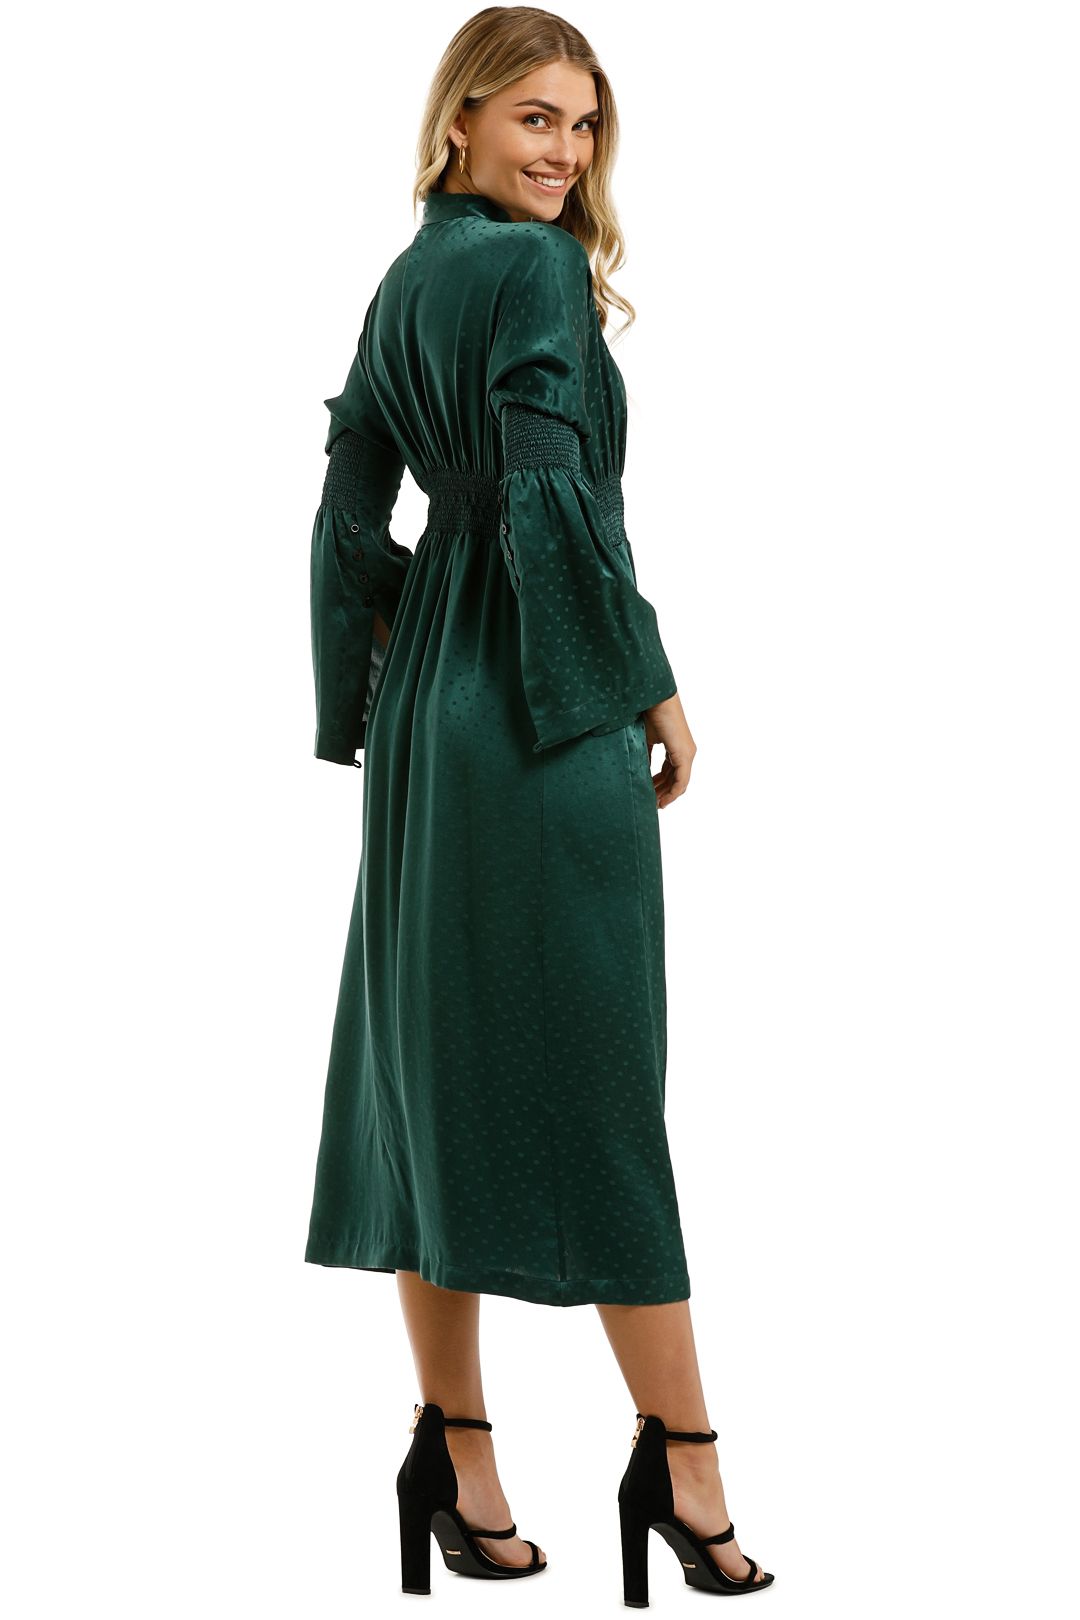 KITX-Essence-Spot-Shirred-Dress-Emerald-Back